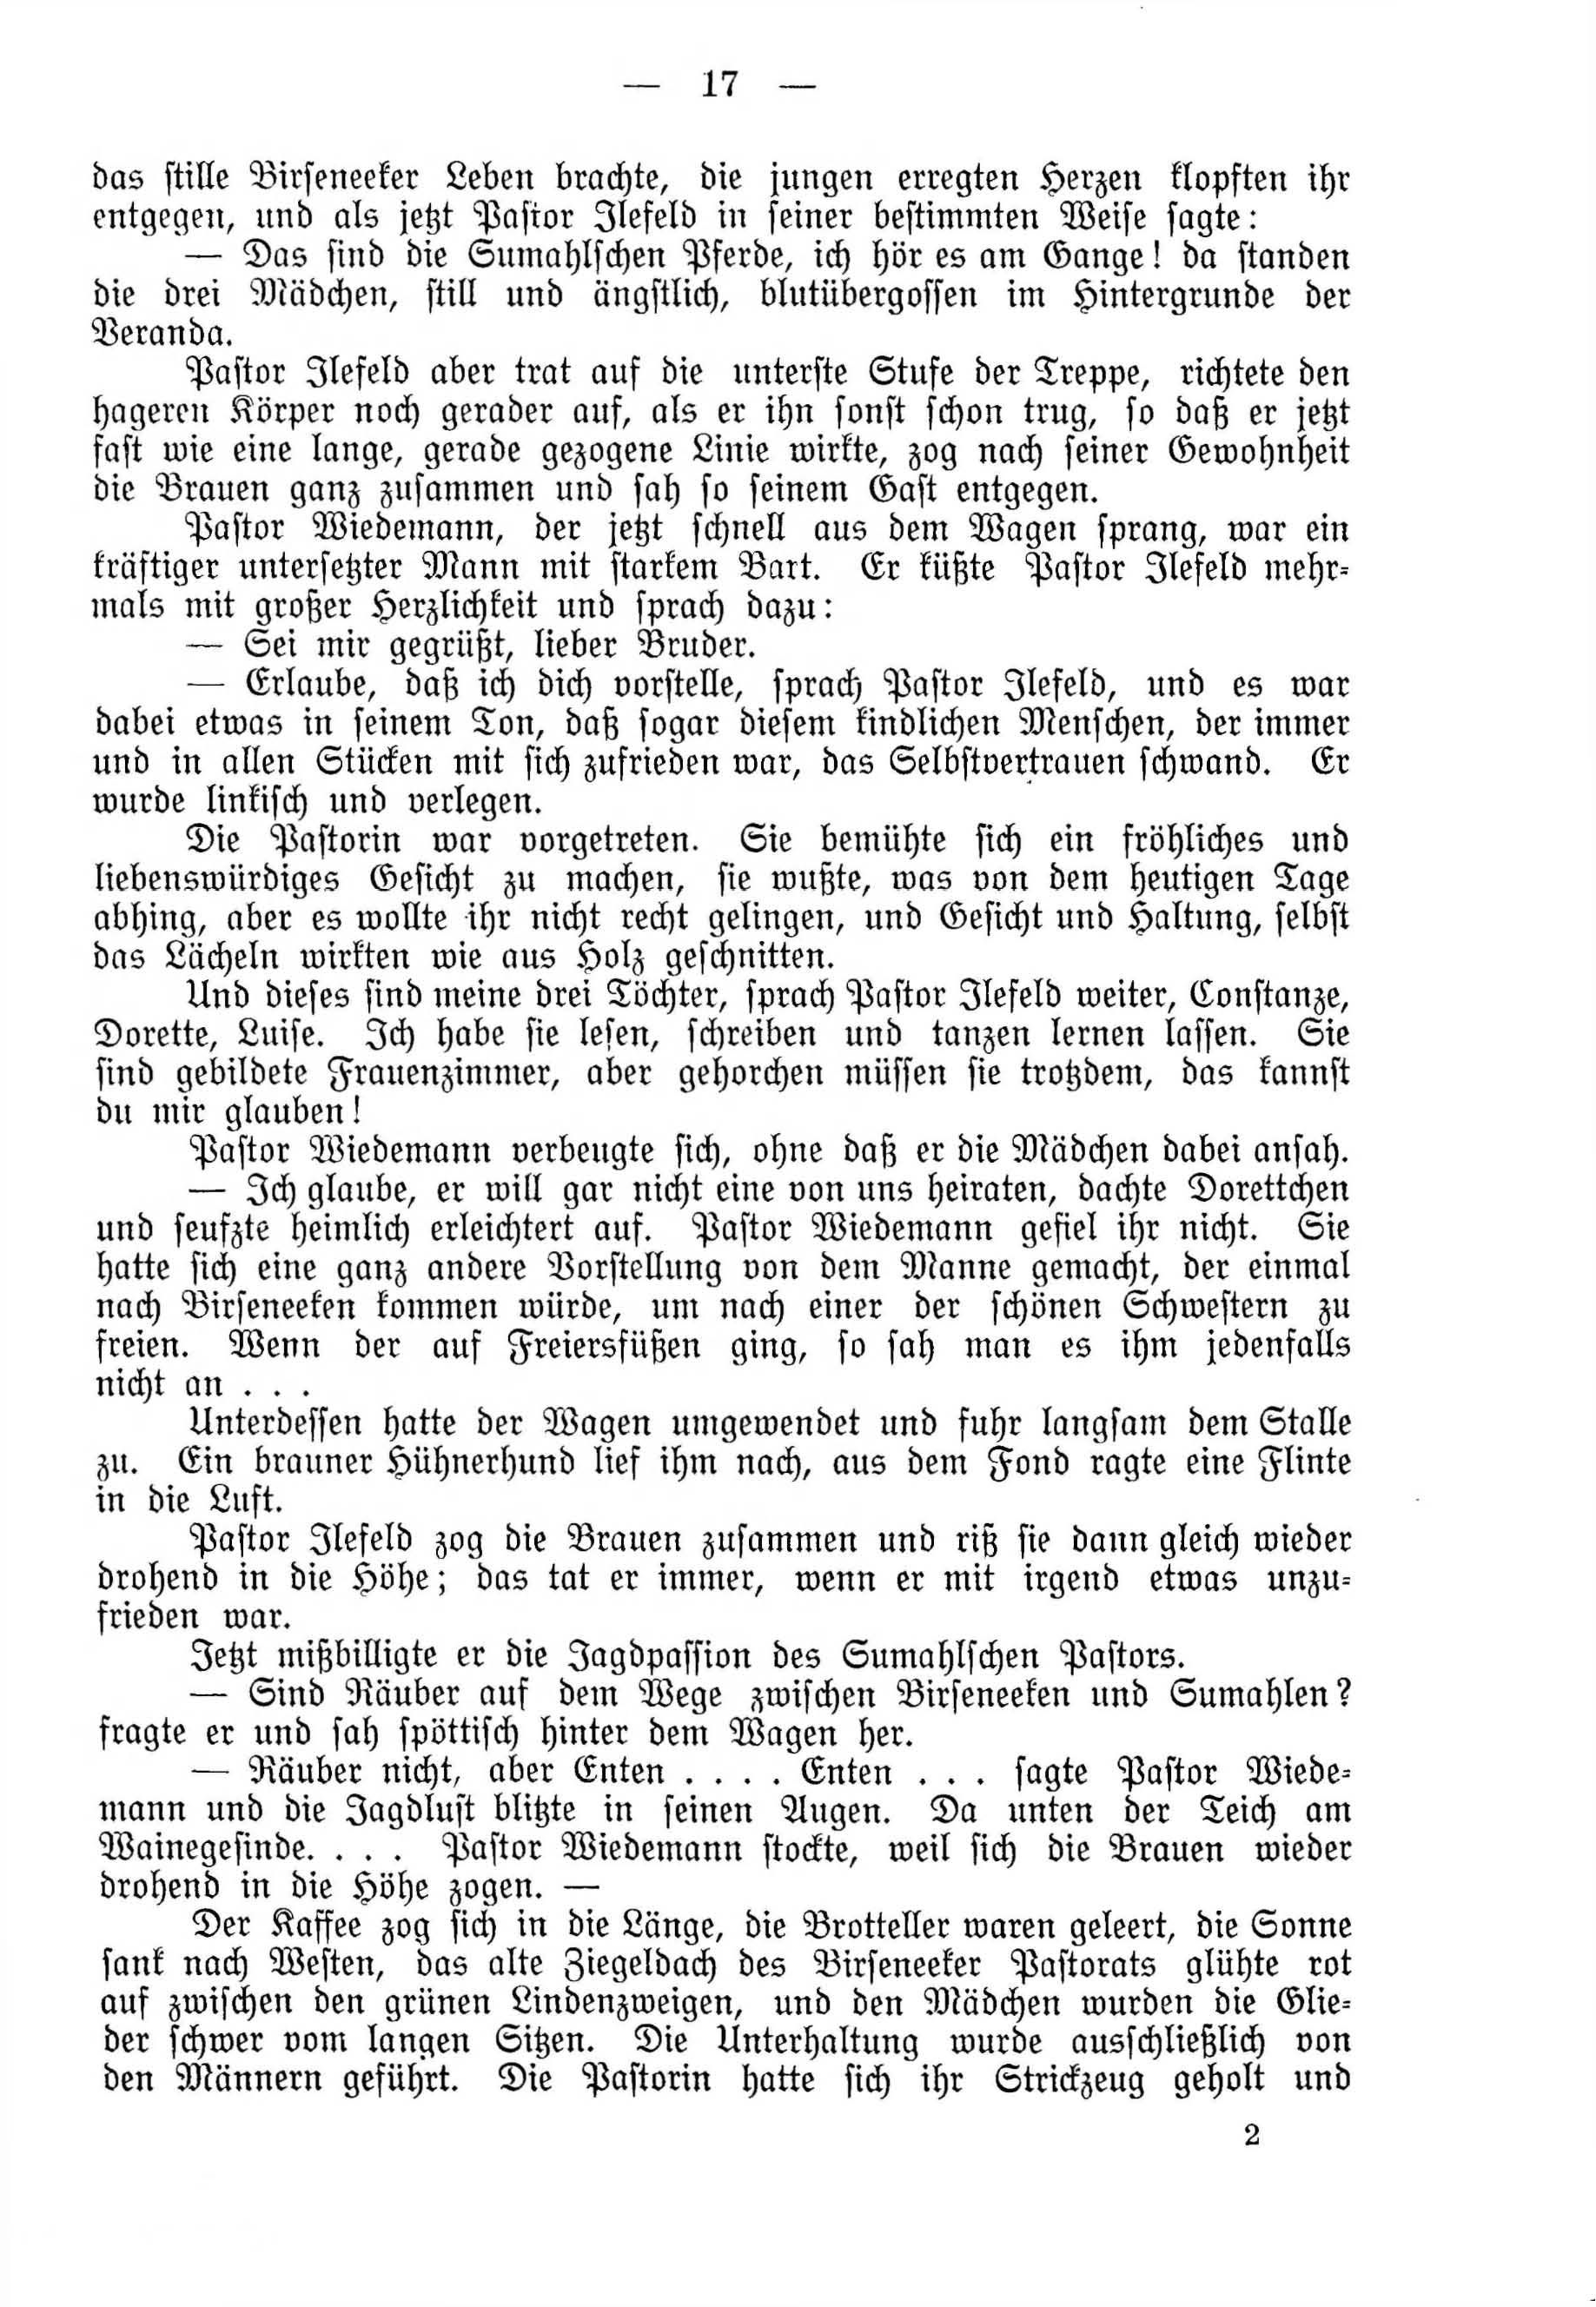 Deutsche Monatsschrift für Russland [4] (1915) | 17. (17) Основной текст